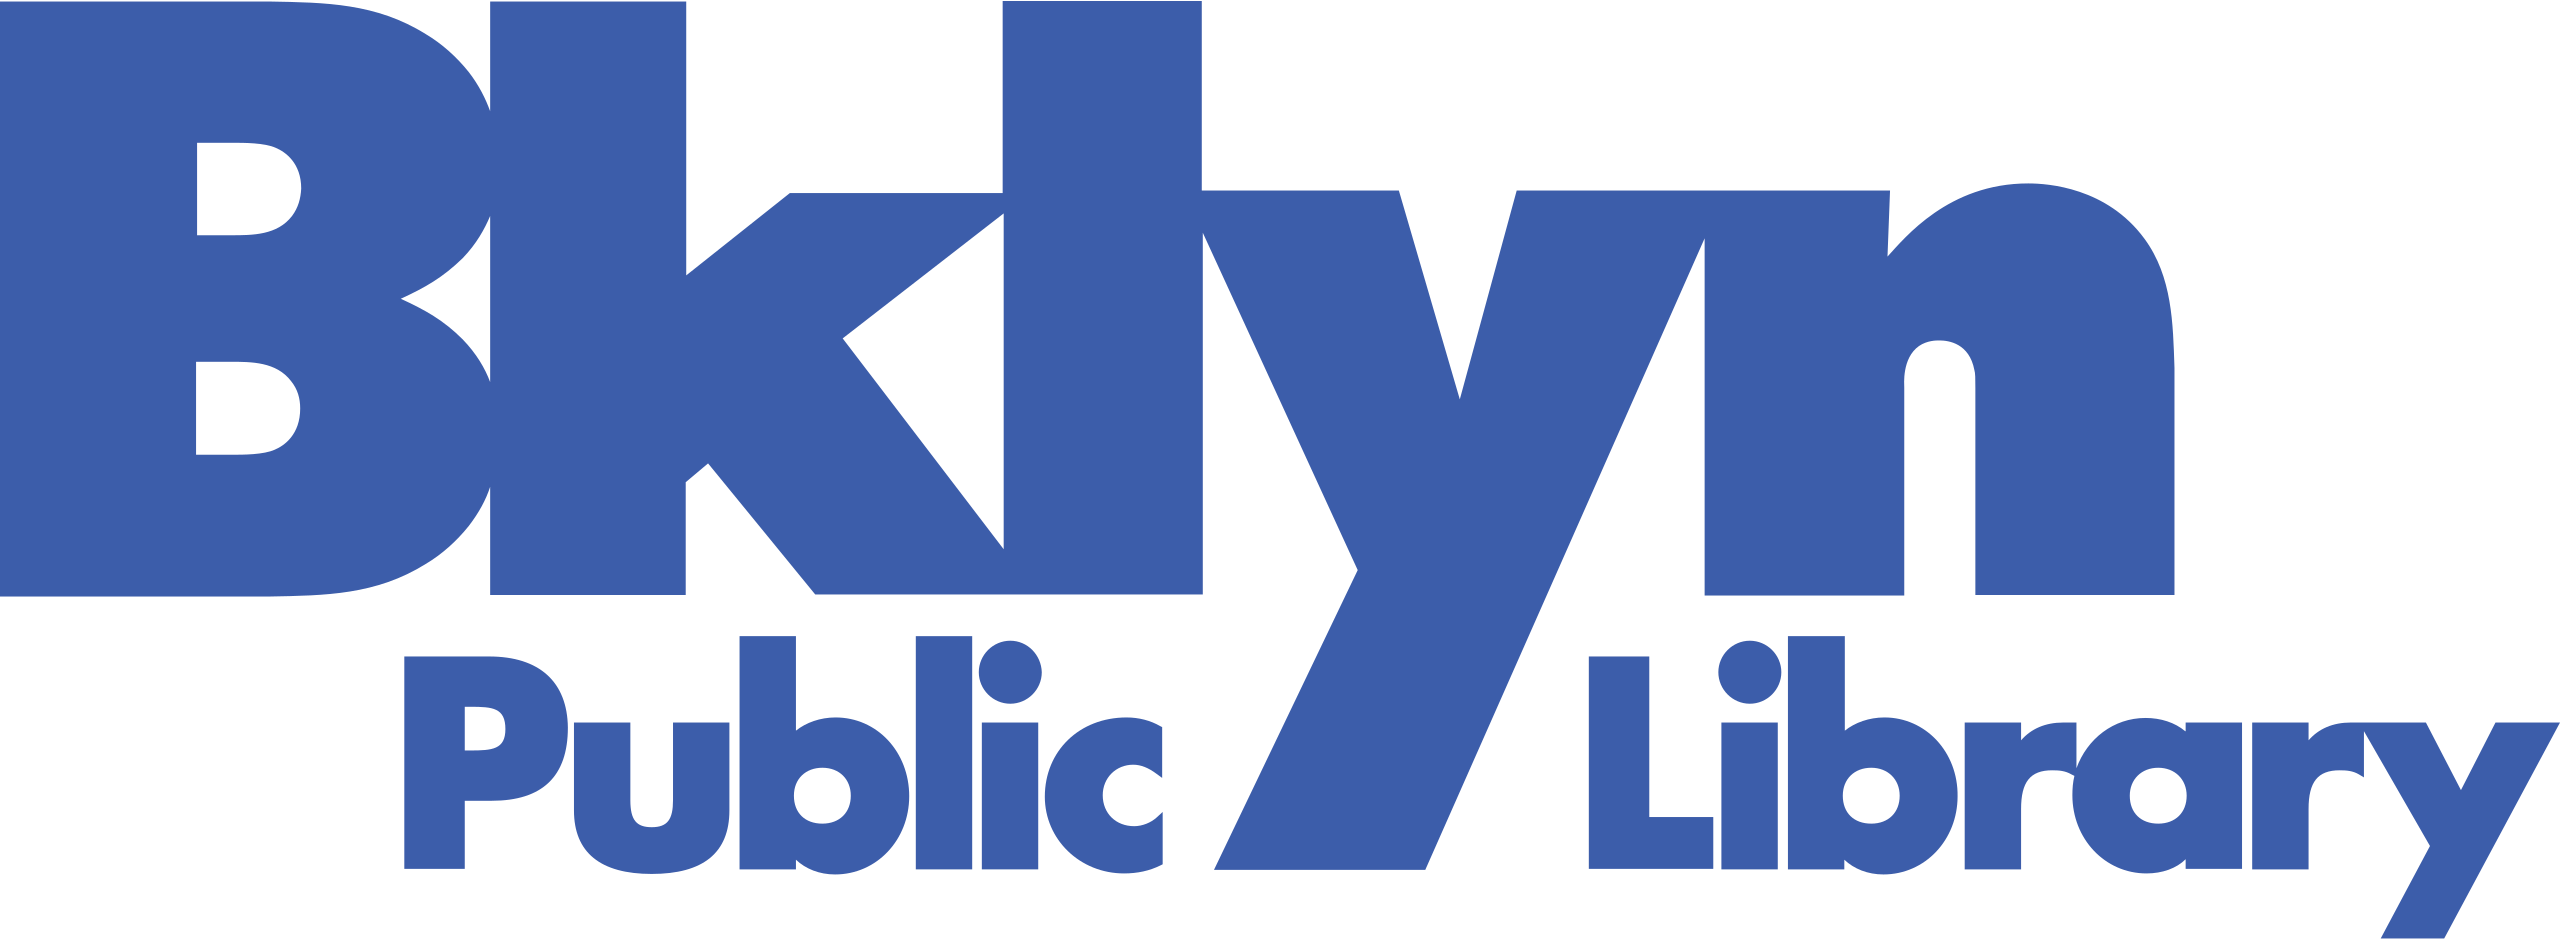 2560px-Brooklyn_Public_Library_logo.svg